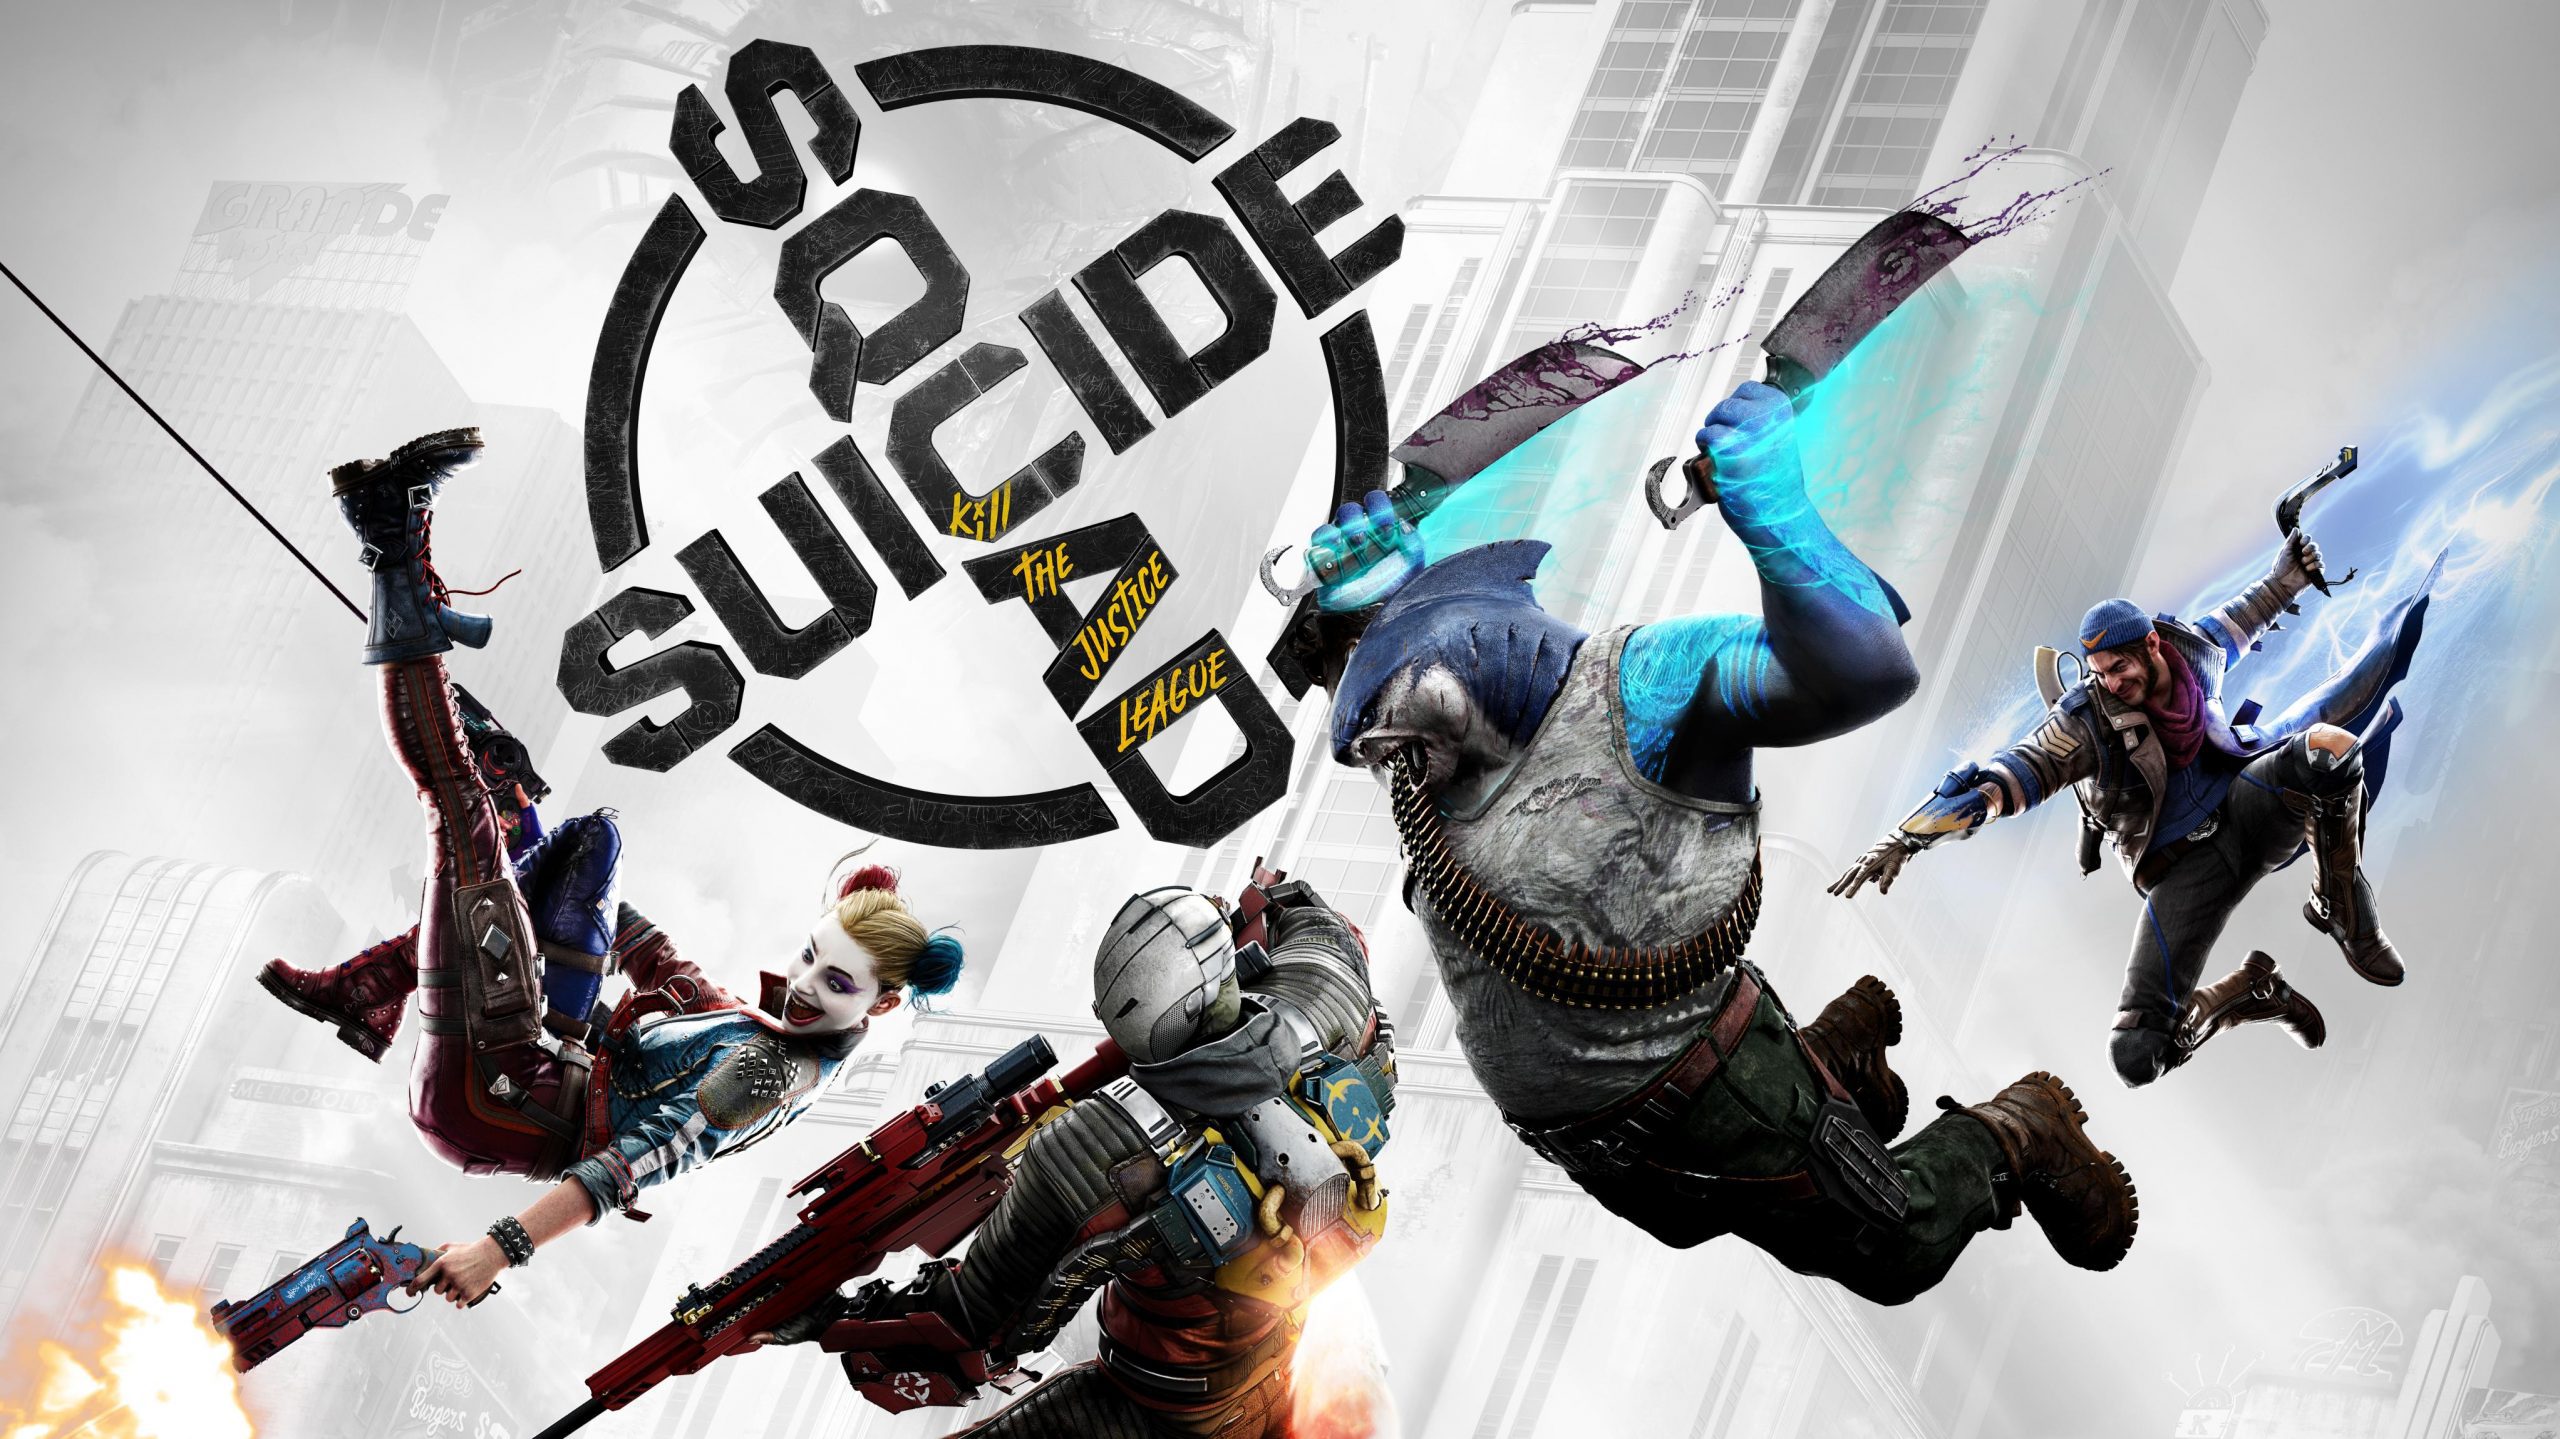 Nuevo vídeo de Suicide Squad: Kill the Justice League en acción que muestra el juego cooperativo para 4 jugadores